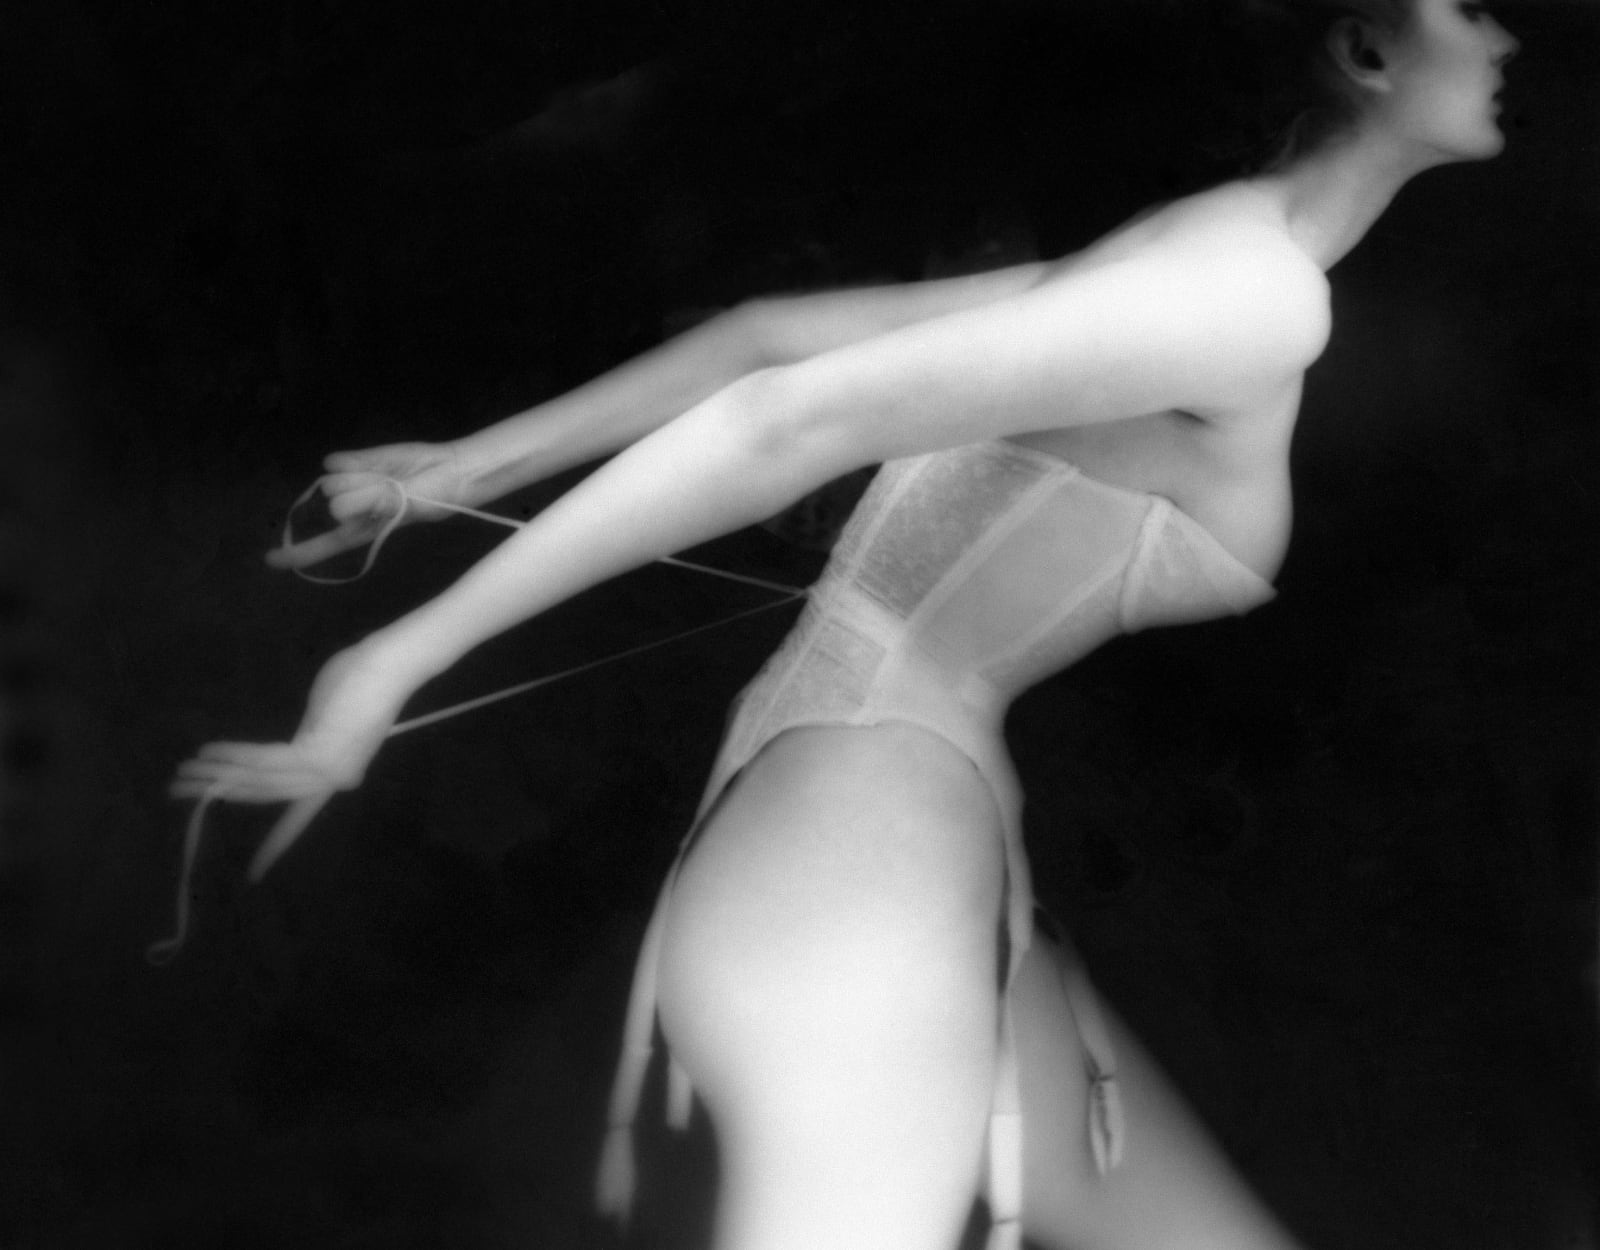 Woman in corset lingerie by Lillian Bassman